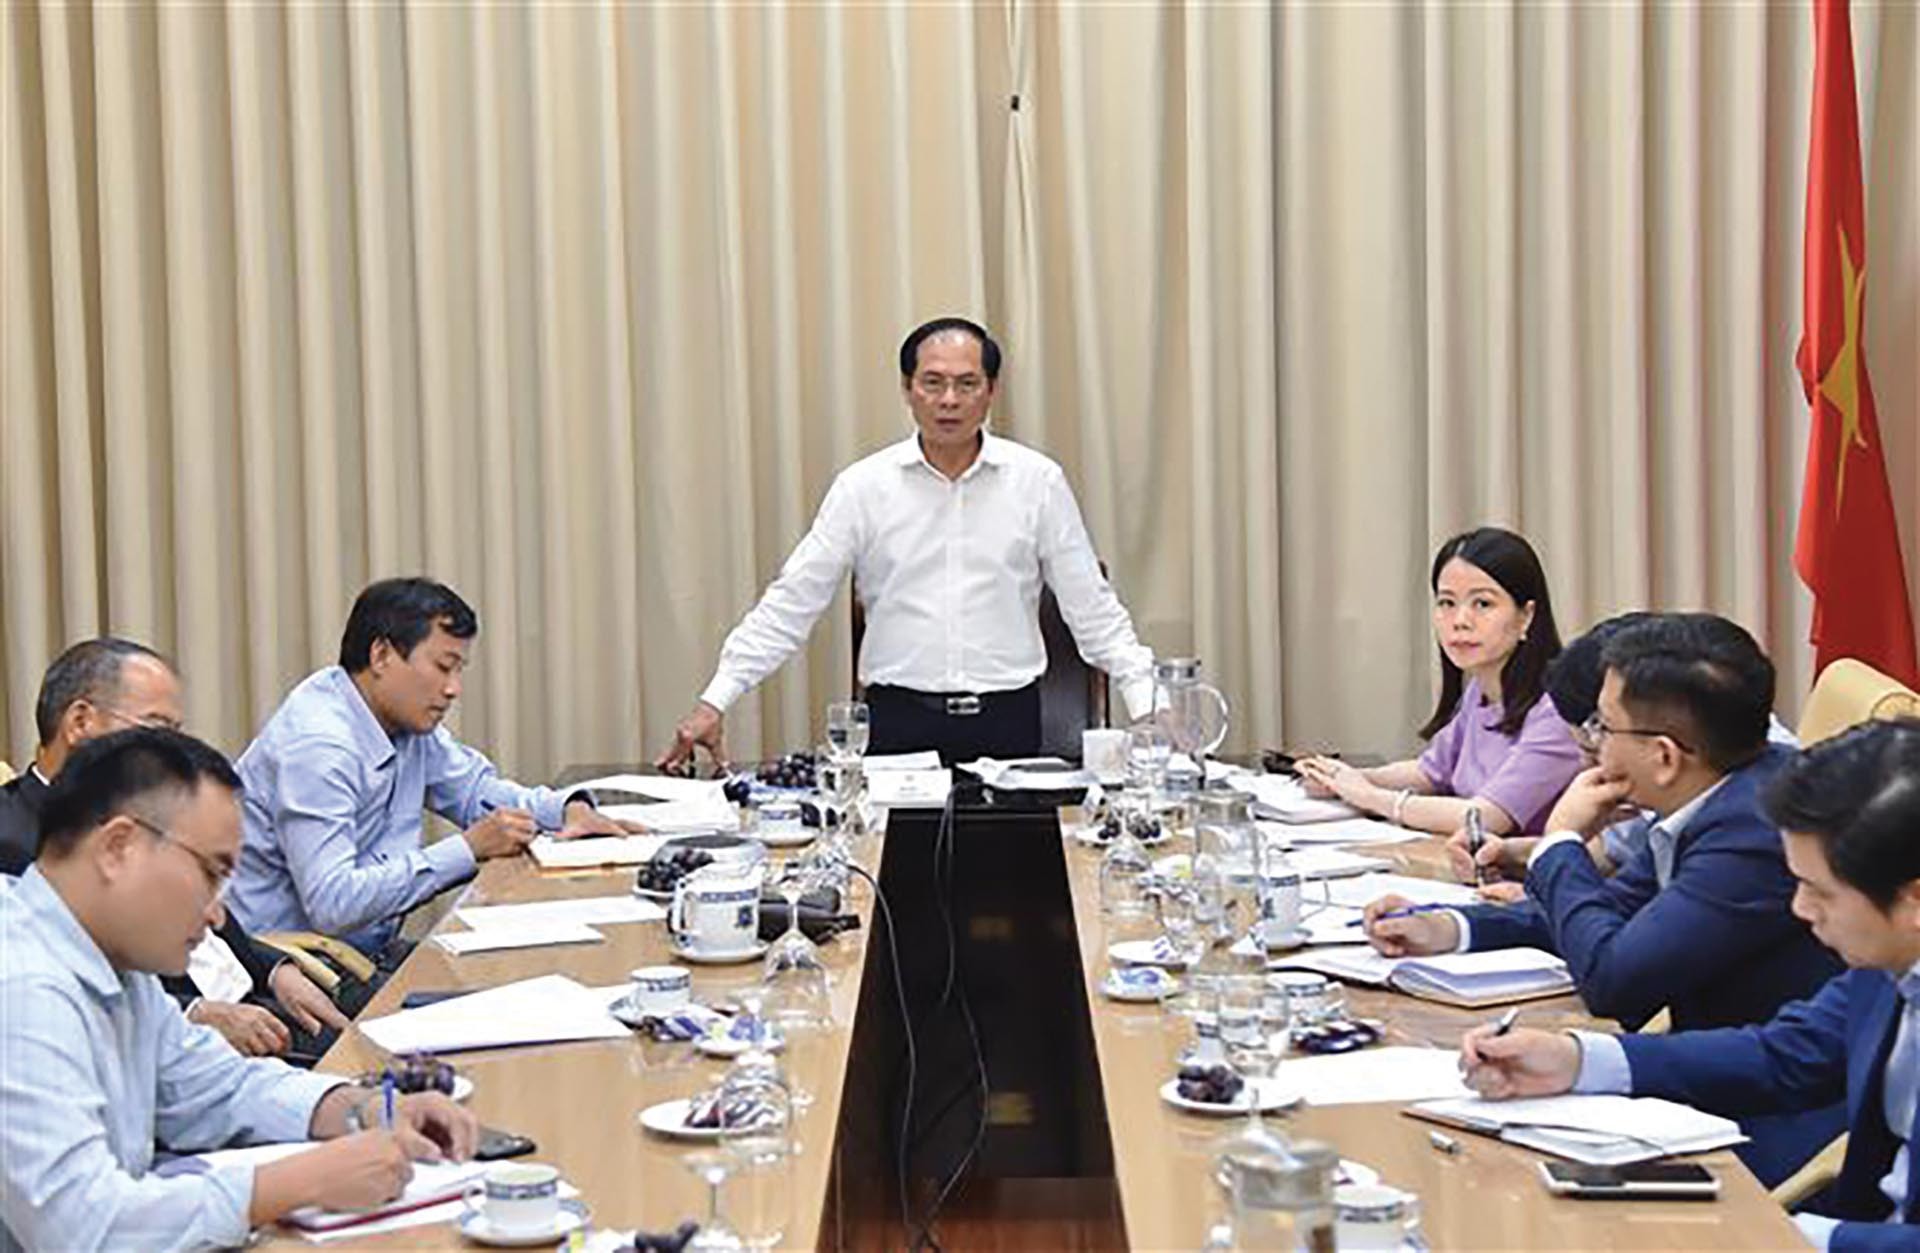 Hội nghị giao ban về đẩy mạnh triển khai công tác ngoại giao kinh tế phục vụ phát triển với các Cơ quan đại diện Việt Nam ở nước ngoài, ngày 28/11/2022. (Ảnh: Tuấn Anh)